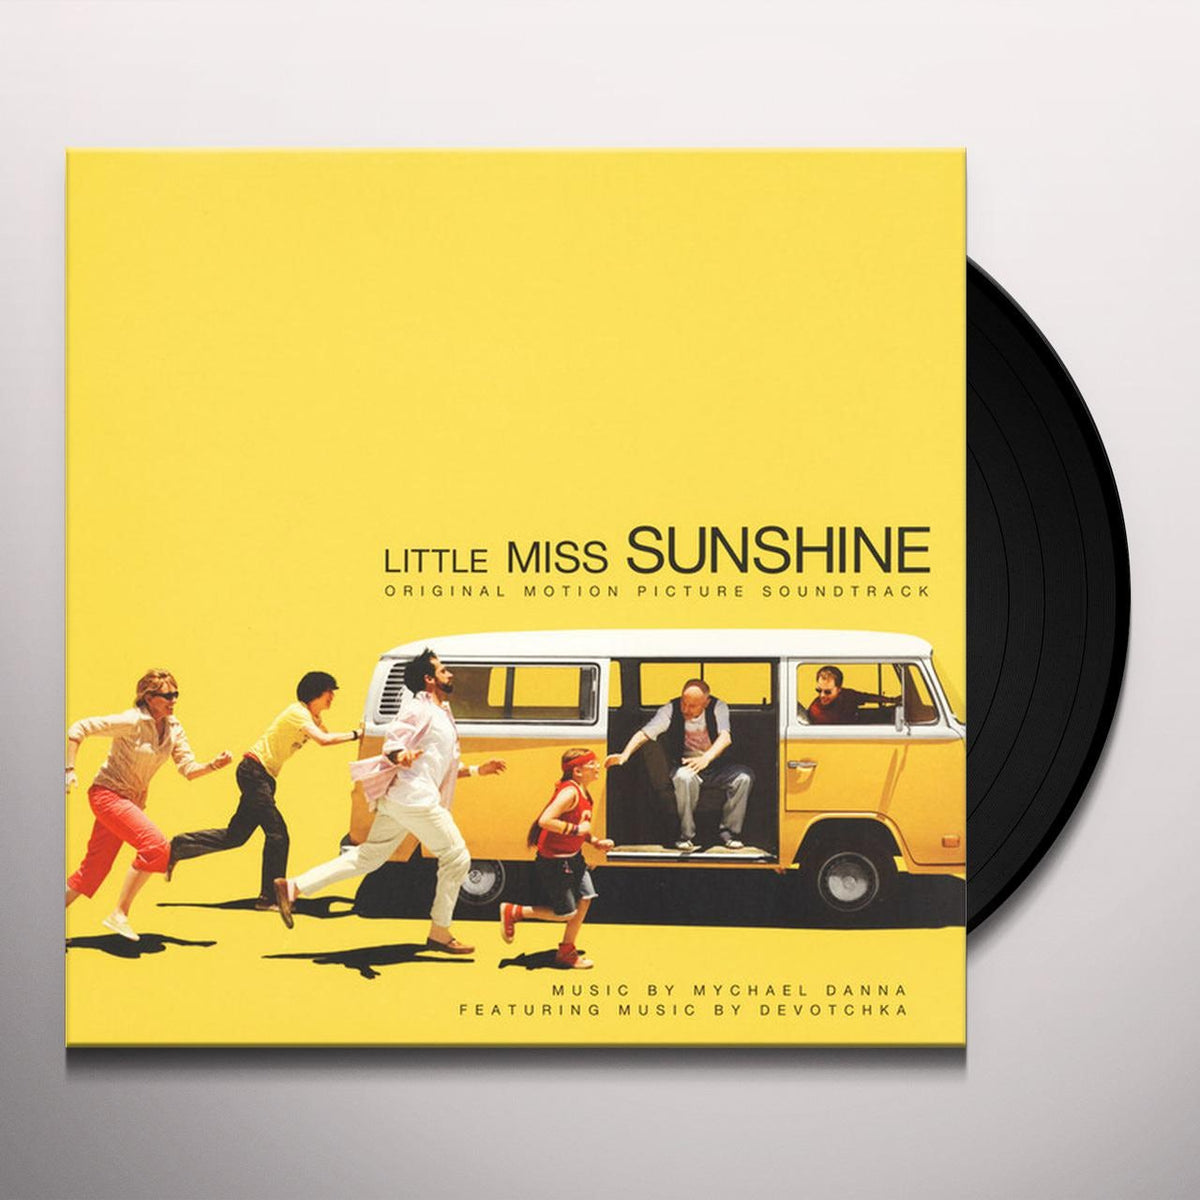 Little Miss Sunshine Original Motion Picture Soundtrack (Distro Title)